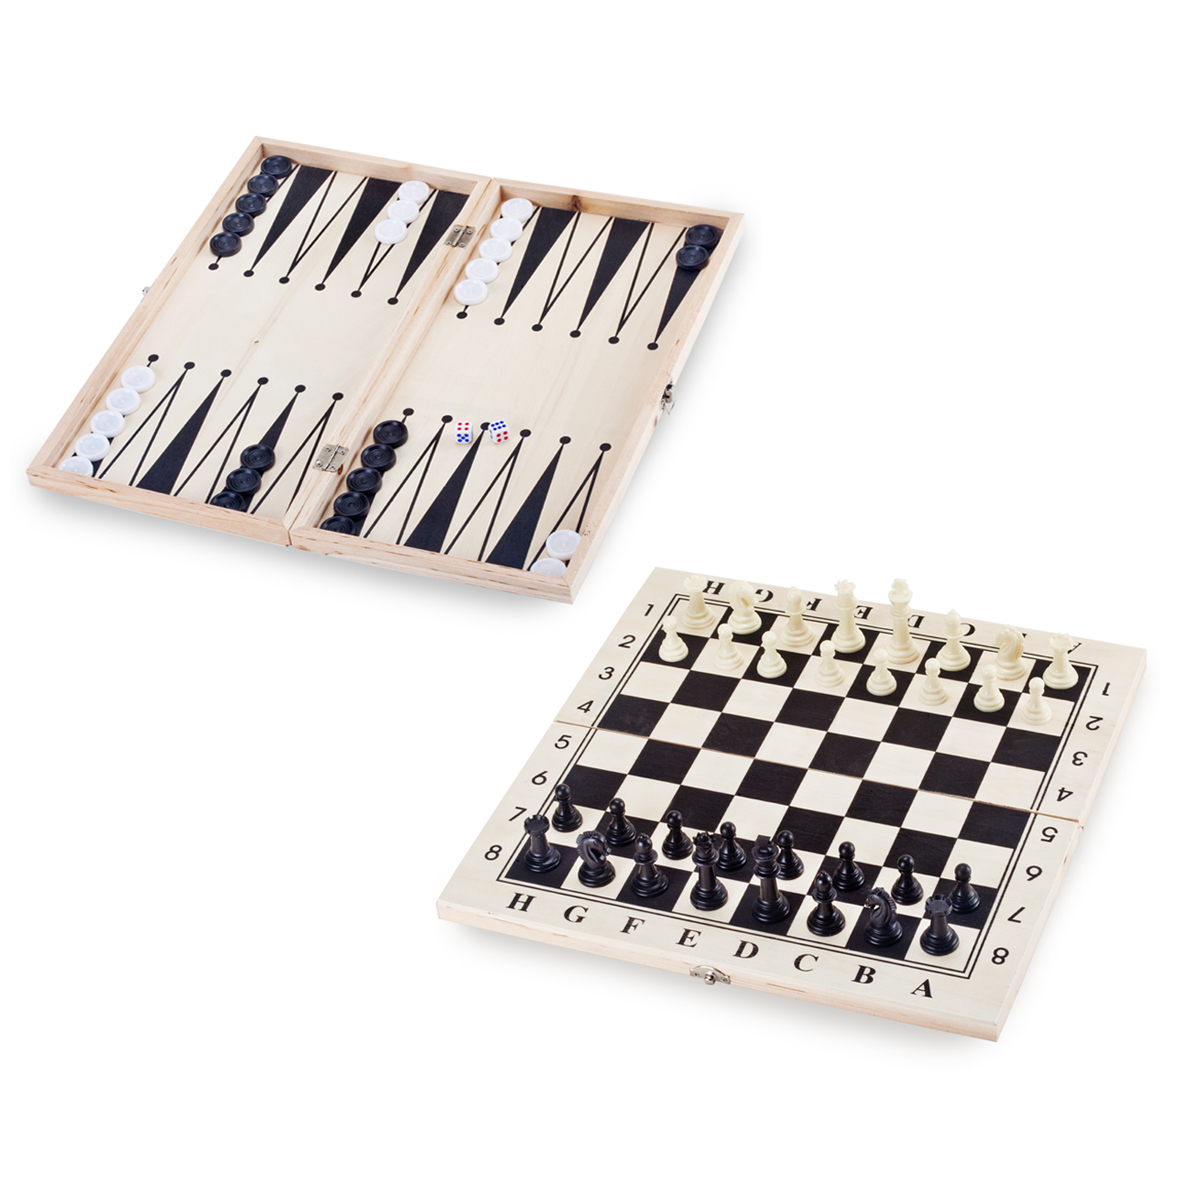 קפאבלנקה - משחקי שח, שש-בש ודמקה 
4x22.5x39 ס”מ, בקופסת עץ. 